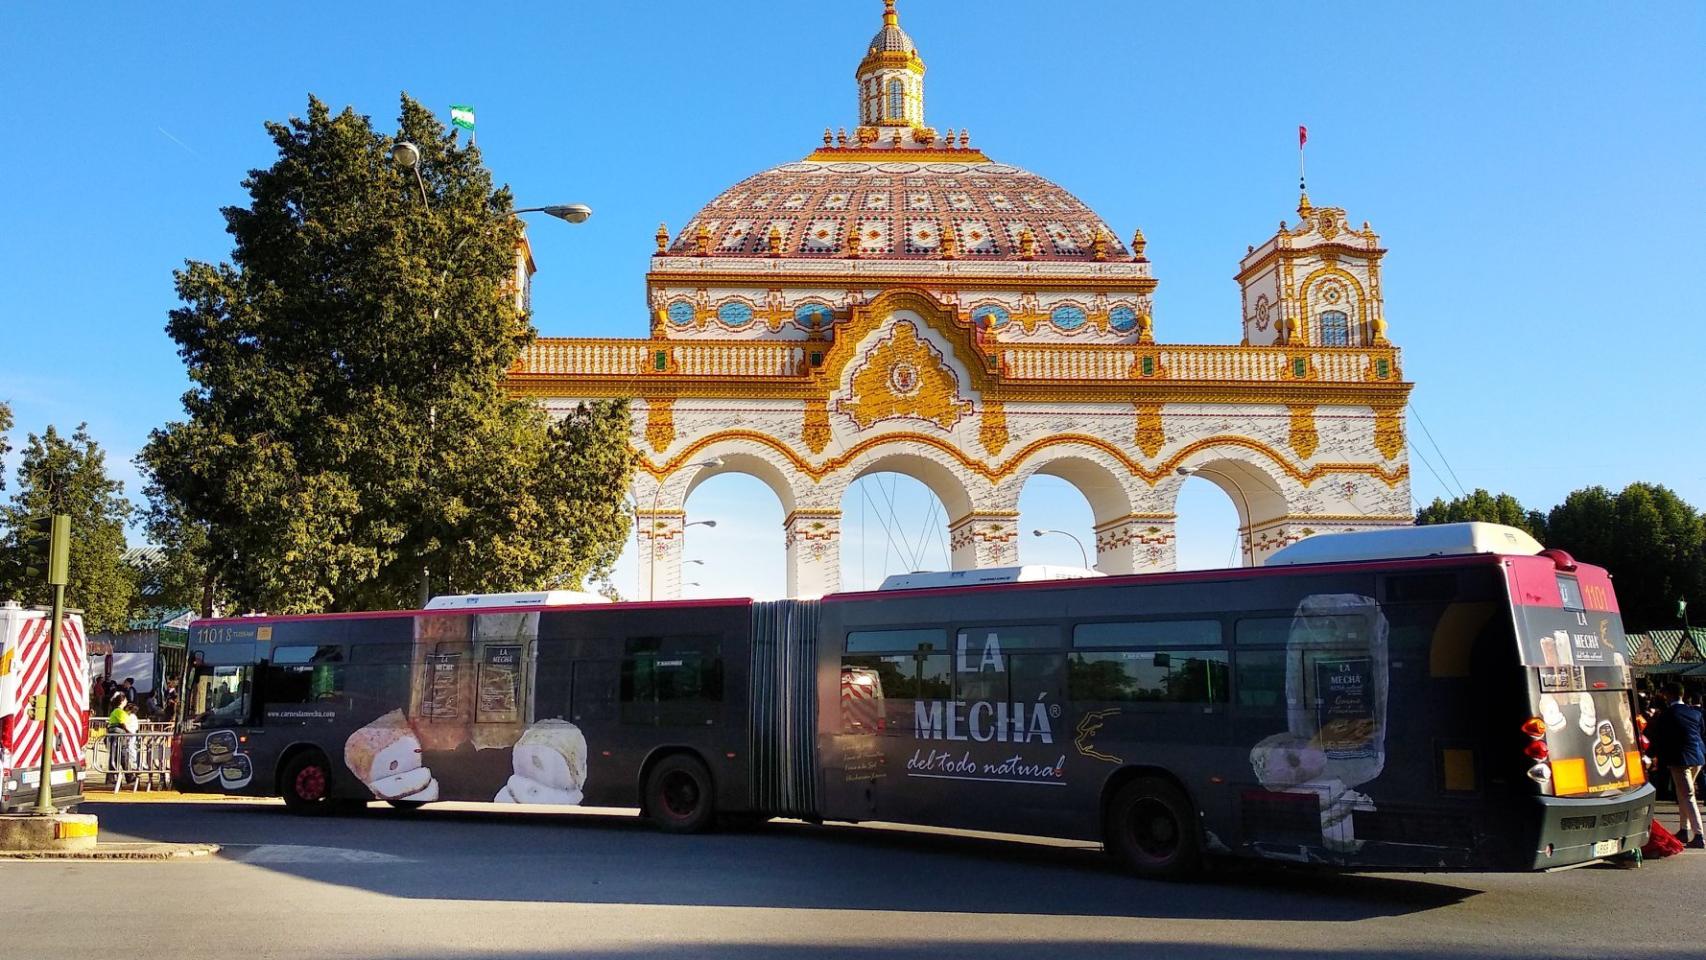 Un autobús con publicidad de La Mechá, frente a la puerta de la Feria de Abril.